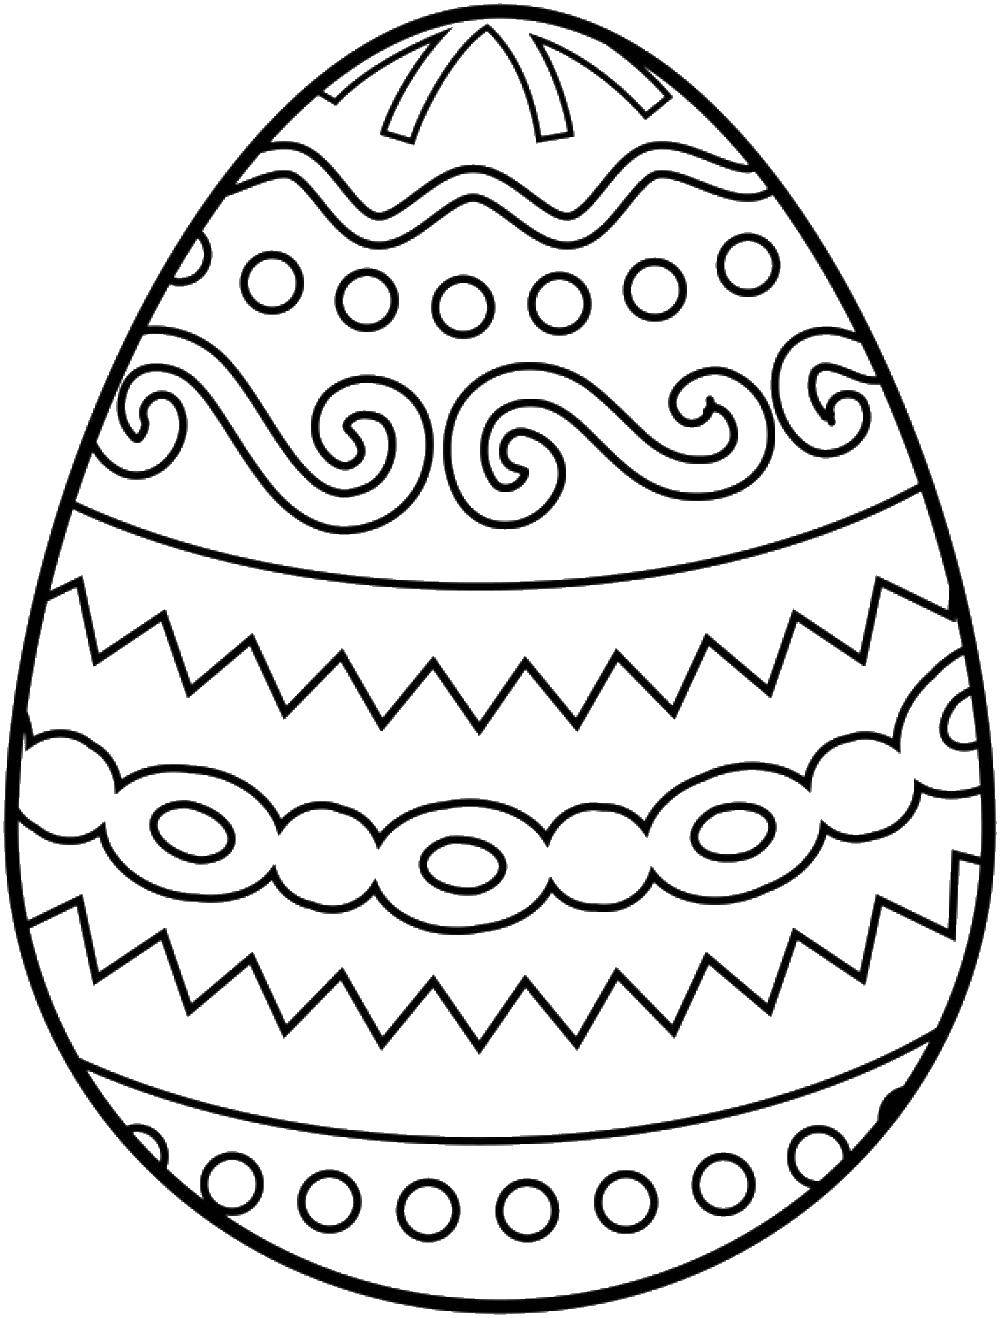 Раскраски на тему Пасхи: узоры яйцах для девочек и мальчиков (яйца, узоры)